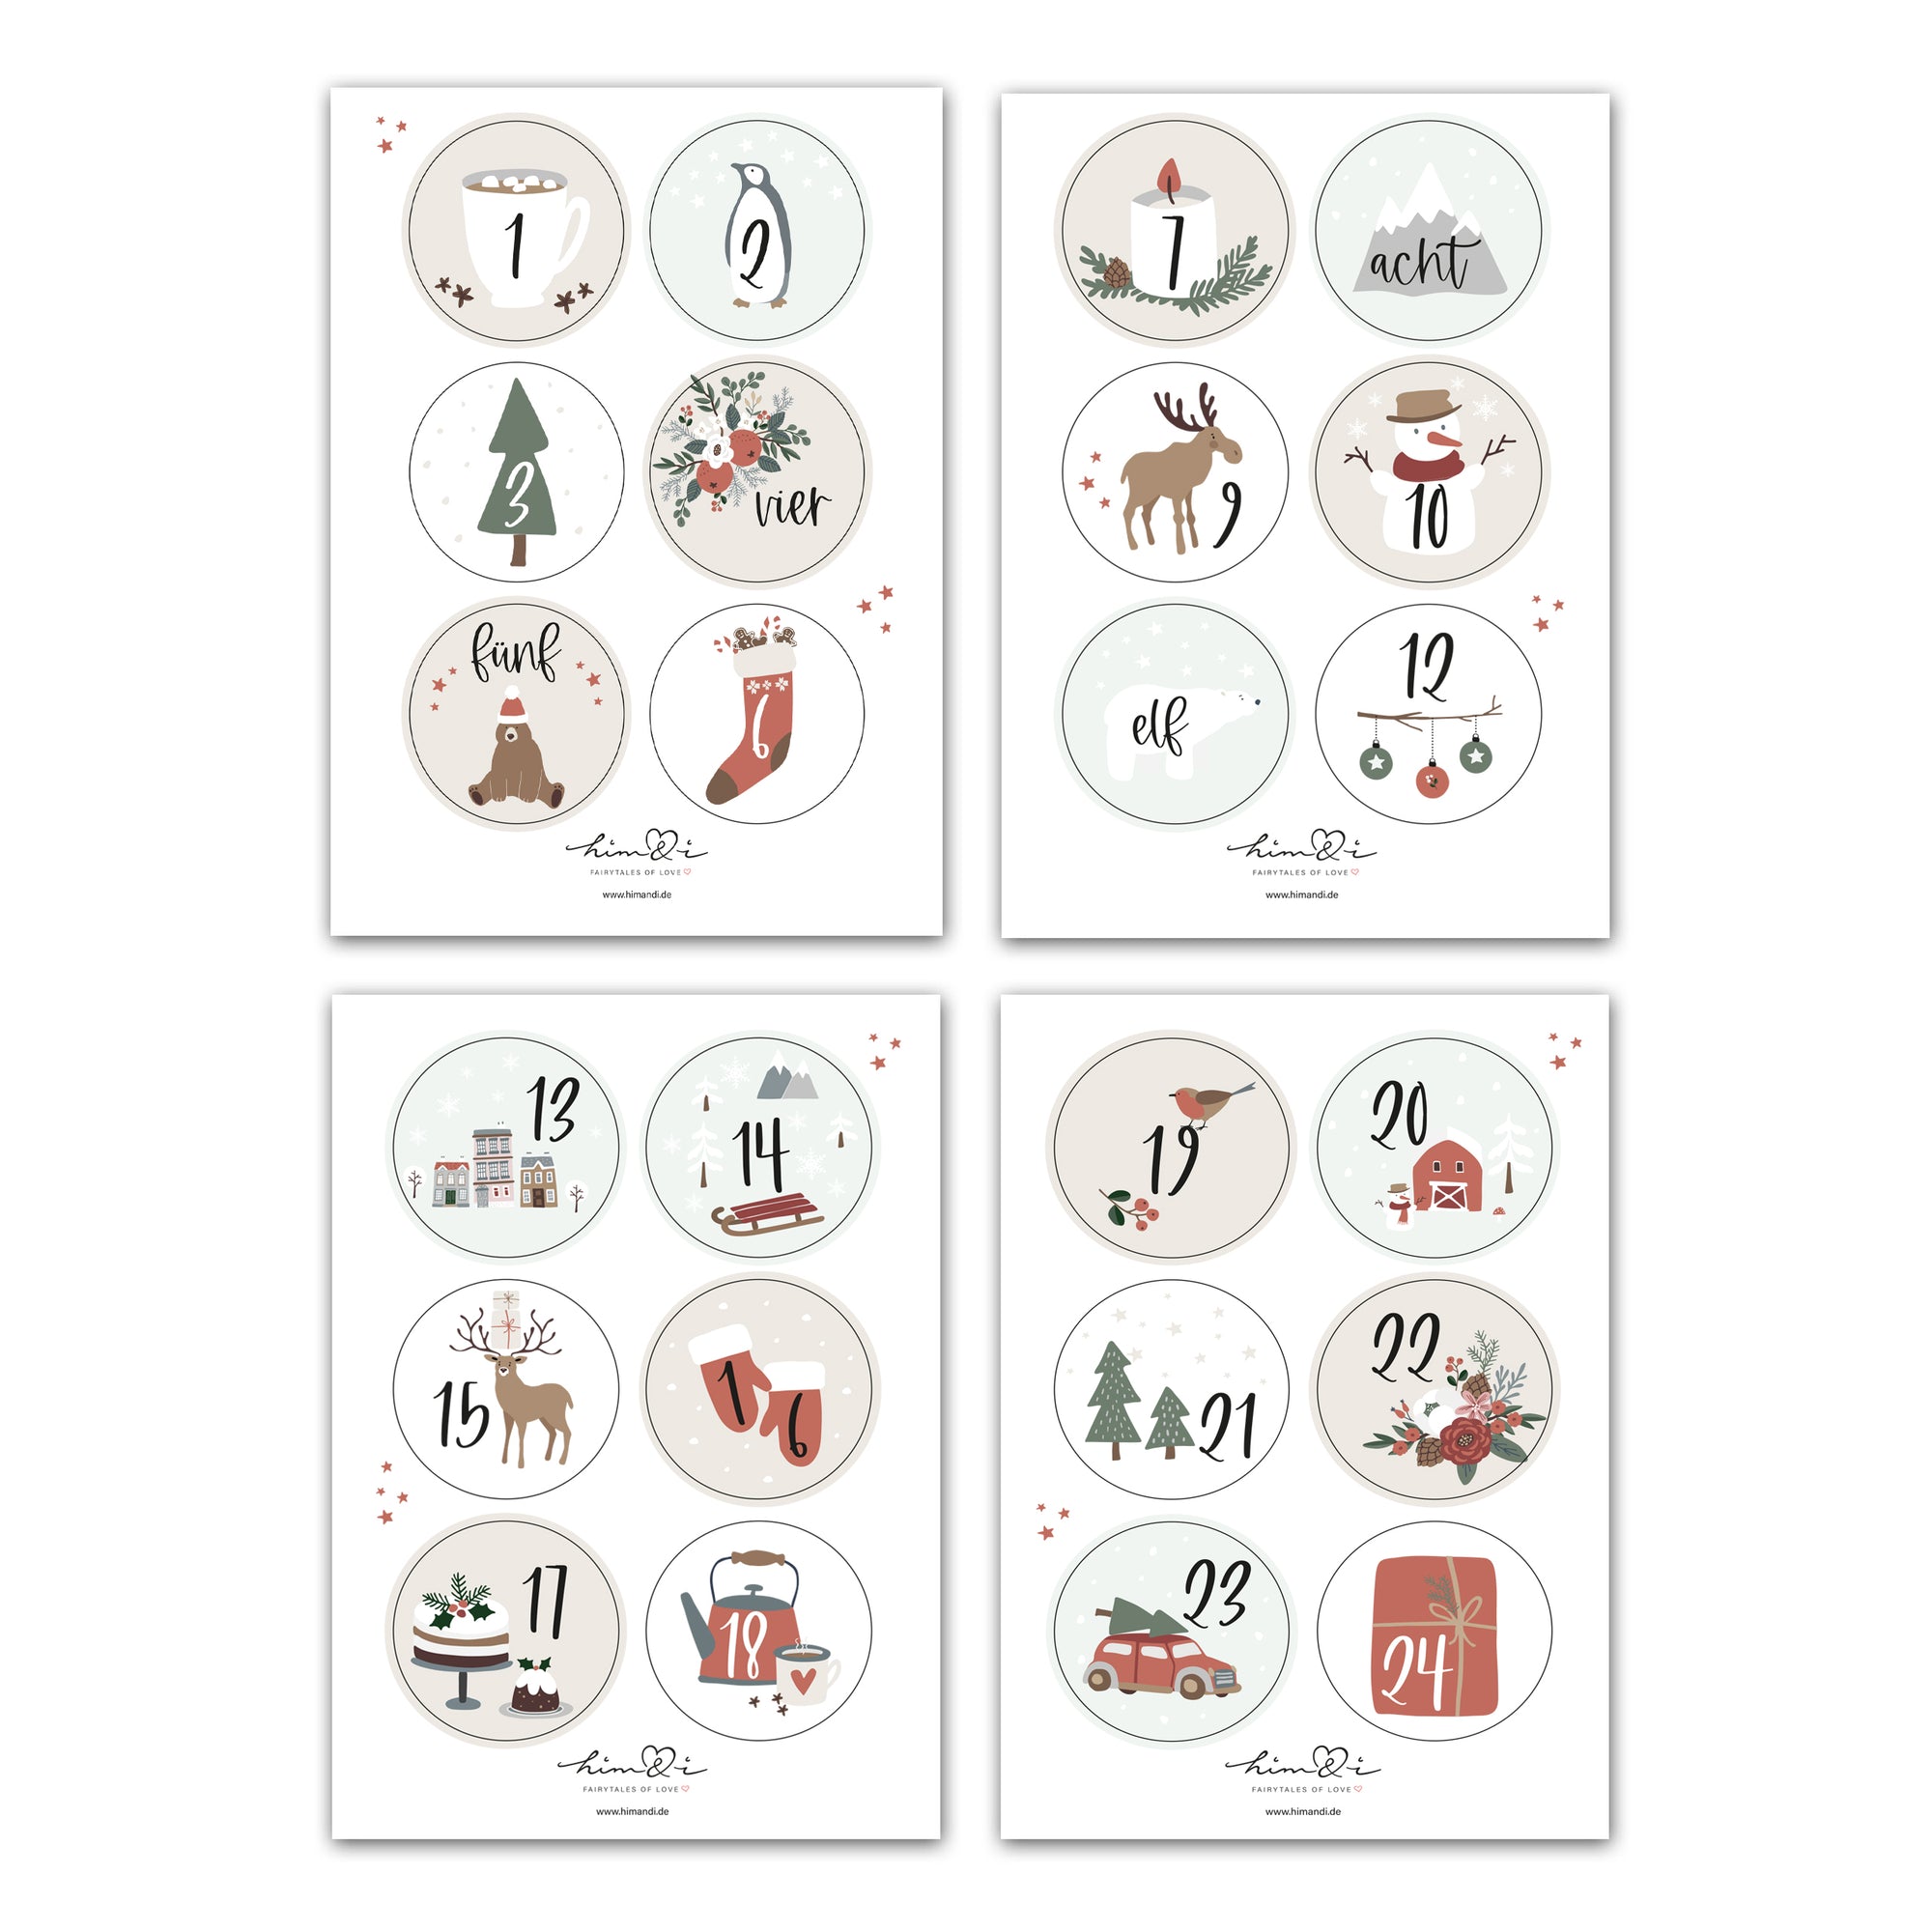 24 Adventskalender Zahlen Sticker Set für DIY Weihnachtskalender